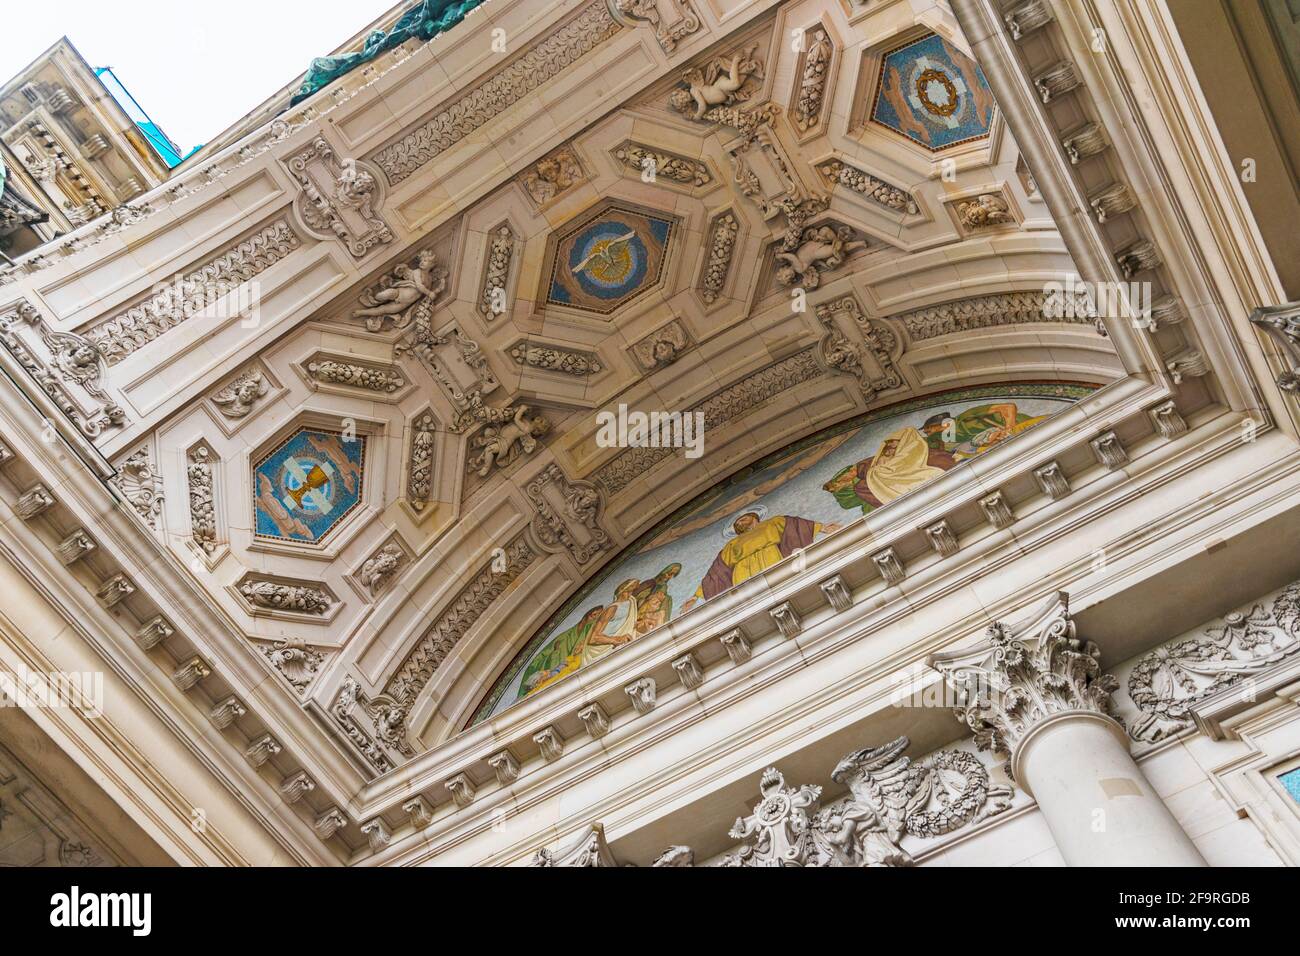 13 mai 2019 Berlin, Allemagne - Détails de la façade de la cathédrale de Berlin. Un pigeon blanc, symbole de paix à l'arche, mosaïques. Banque D'Images